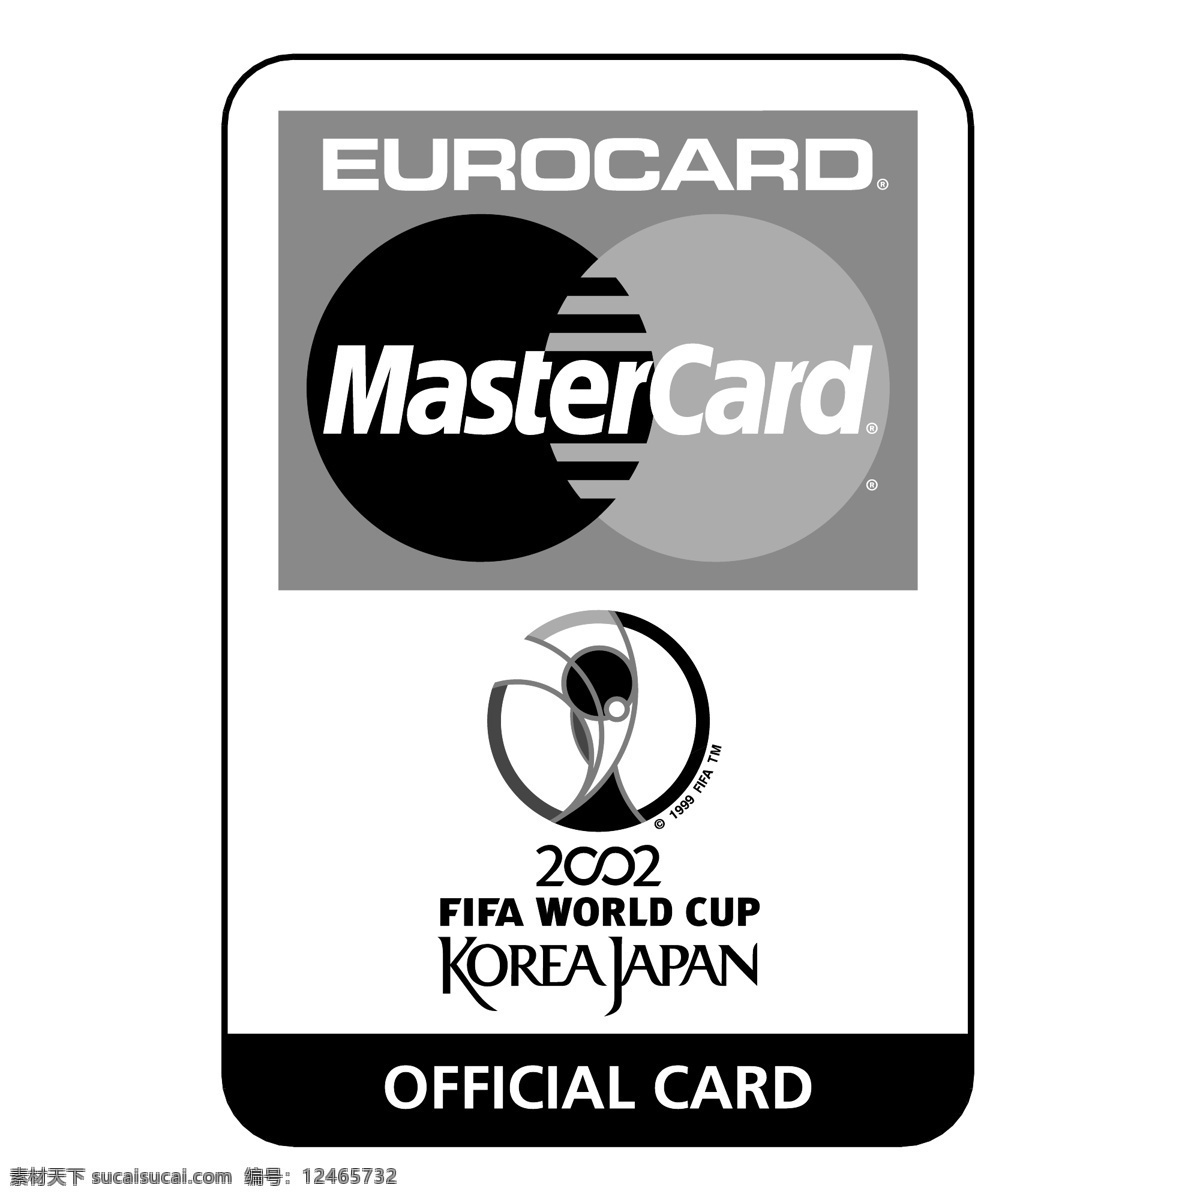 2002 国际足联 世界杯 万事达卡 自由 欧洲 信用卡 标志 白色